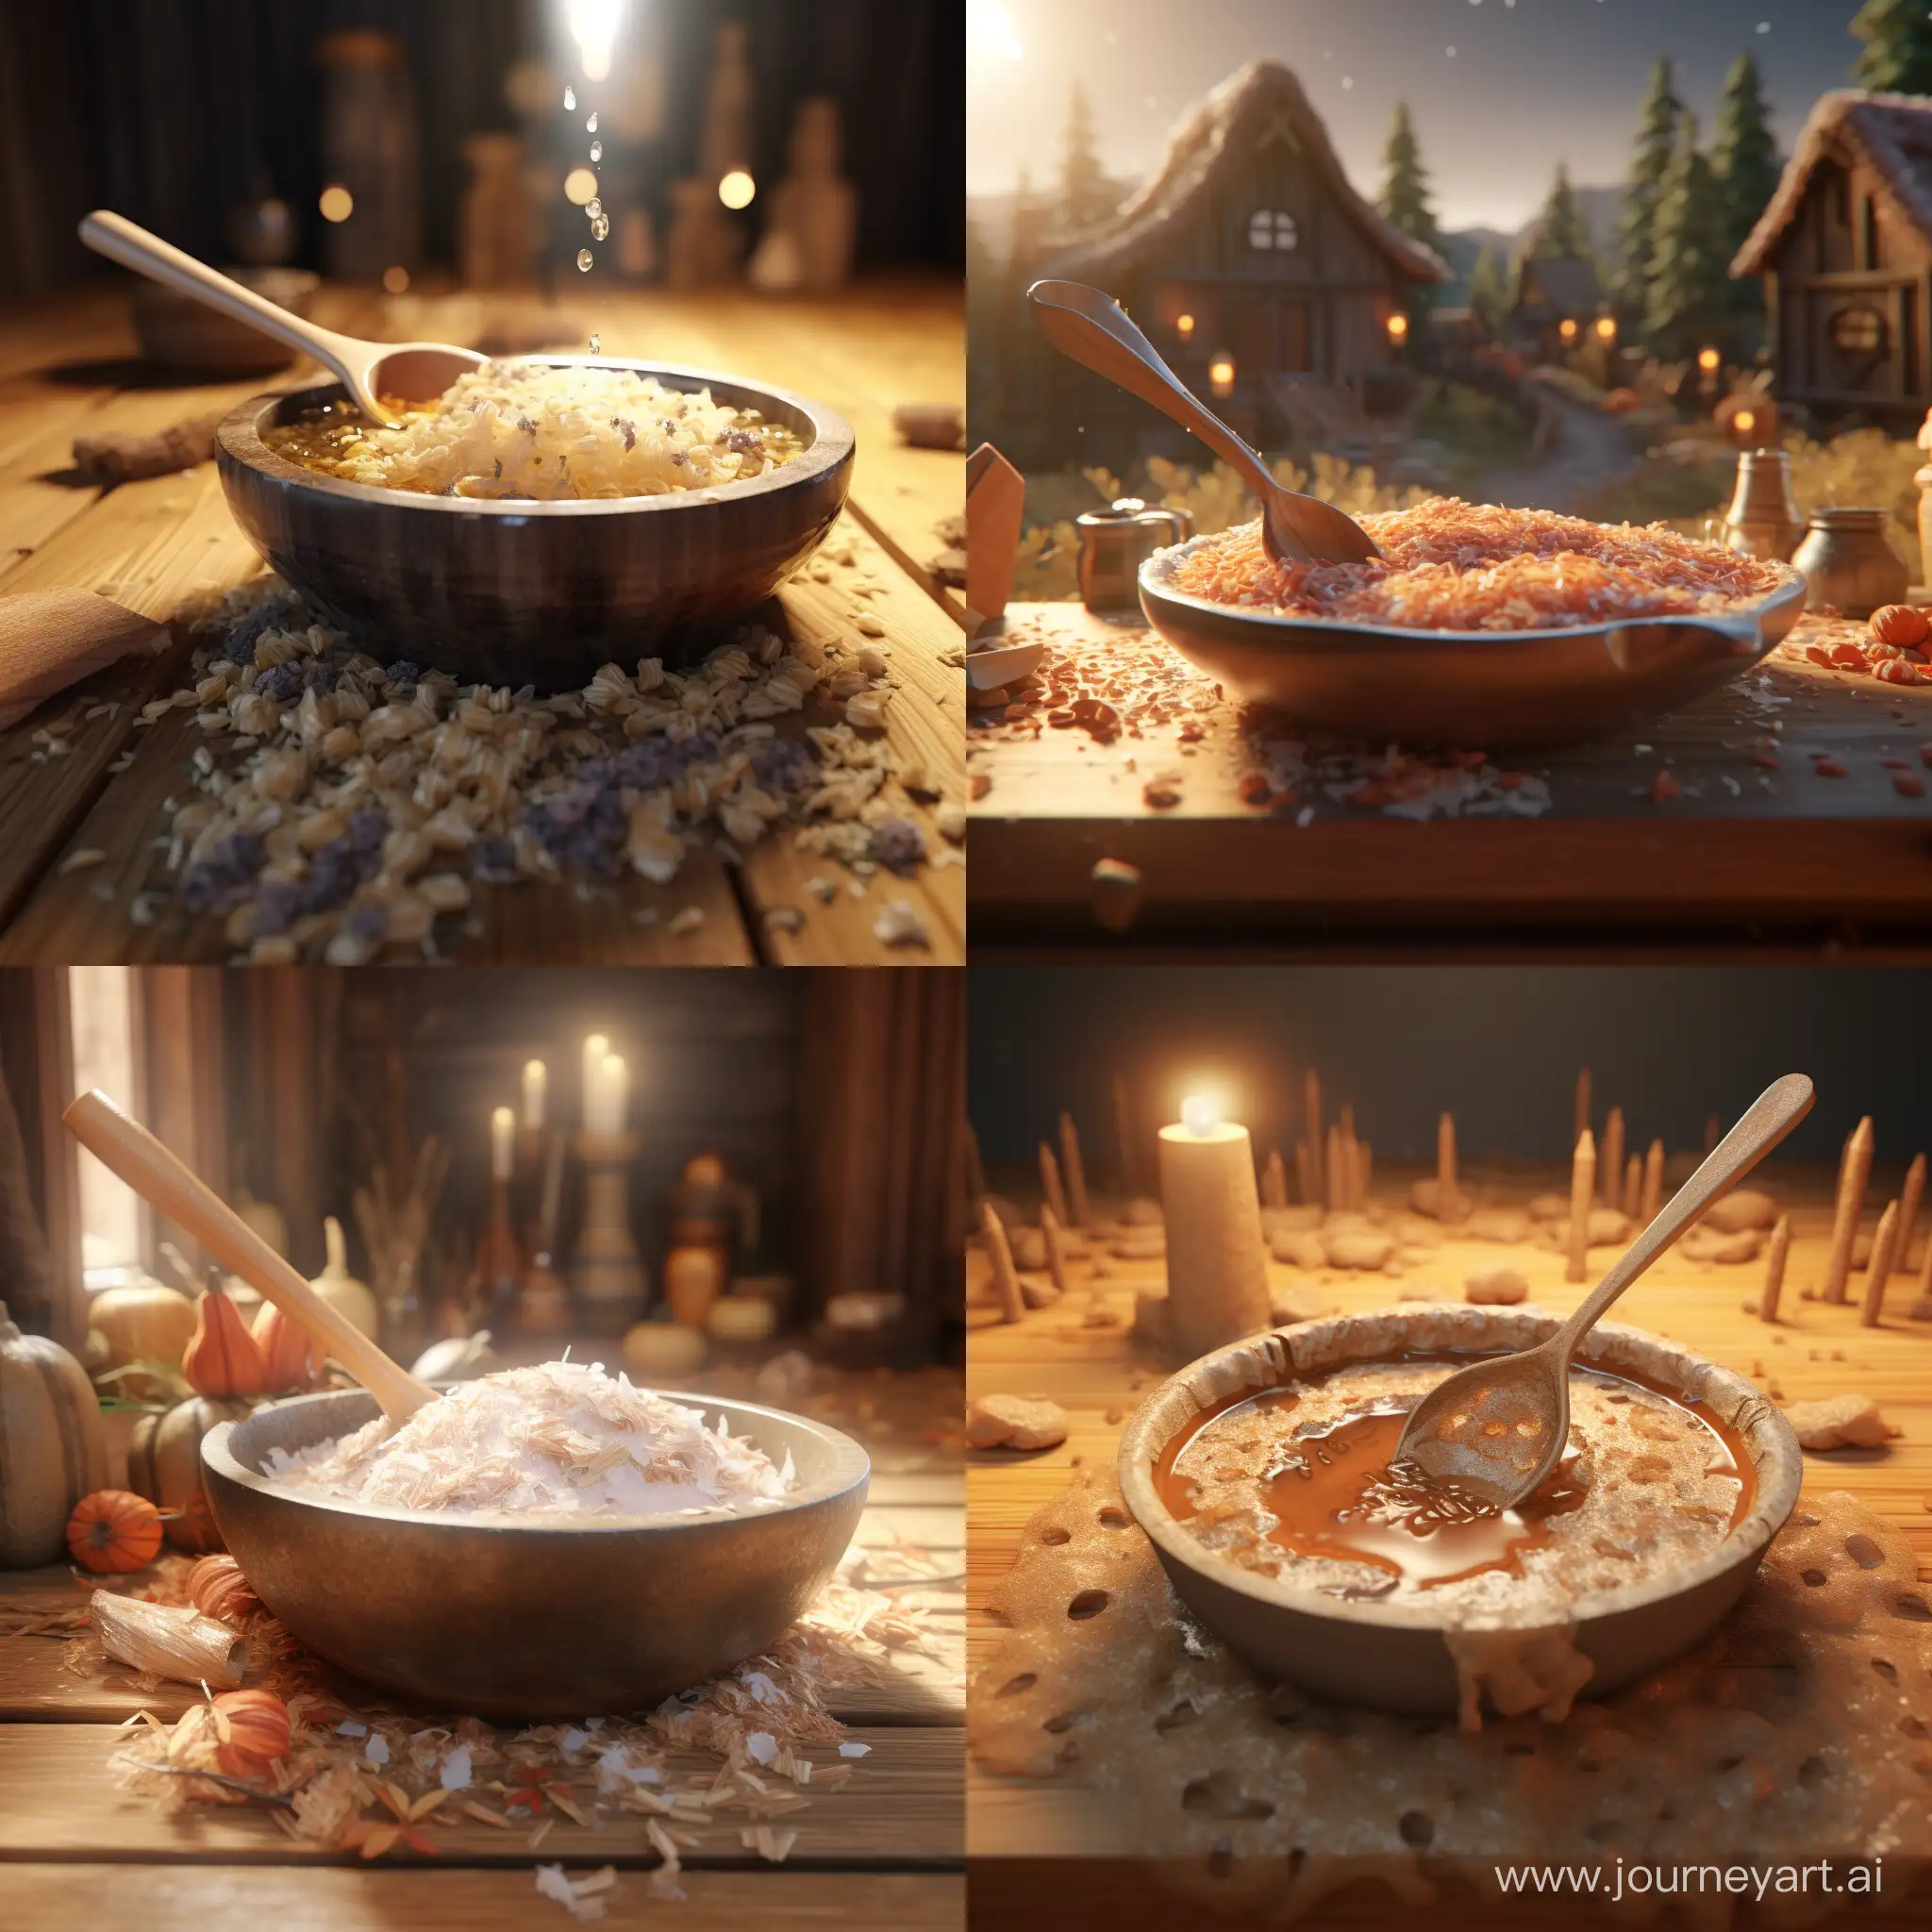 Lumberjack-Preparing-Porridge-with-Axe-Whimsical-3D-Animation